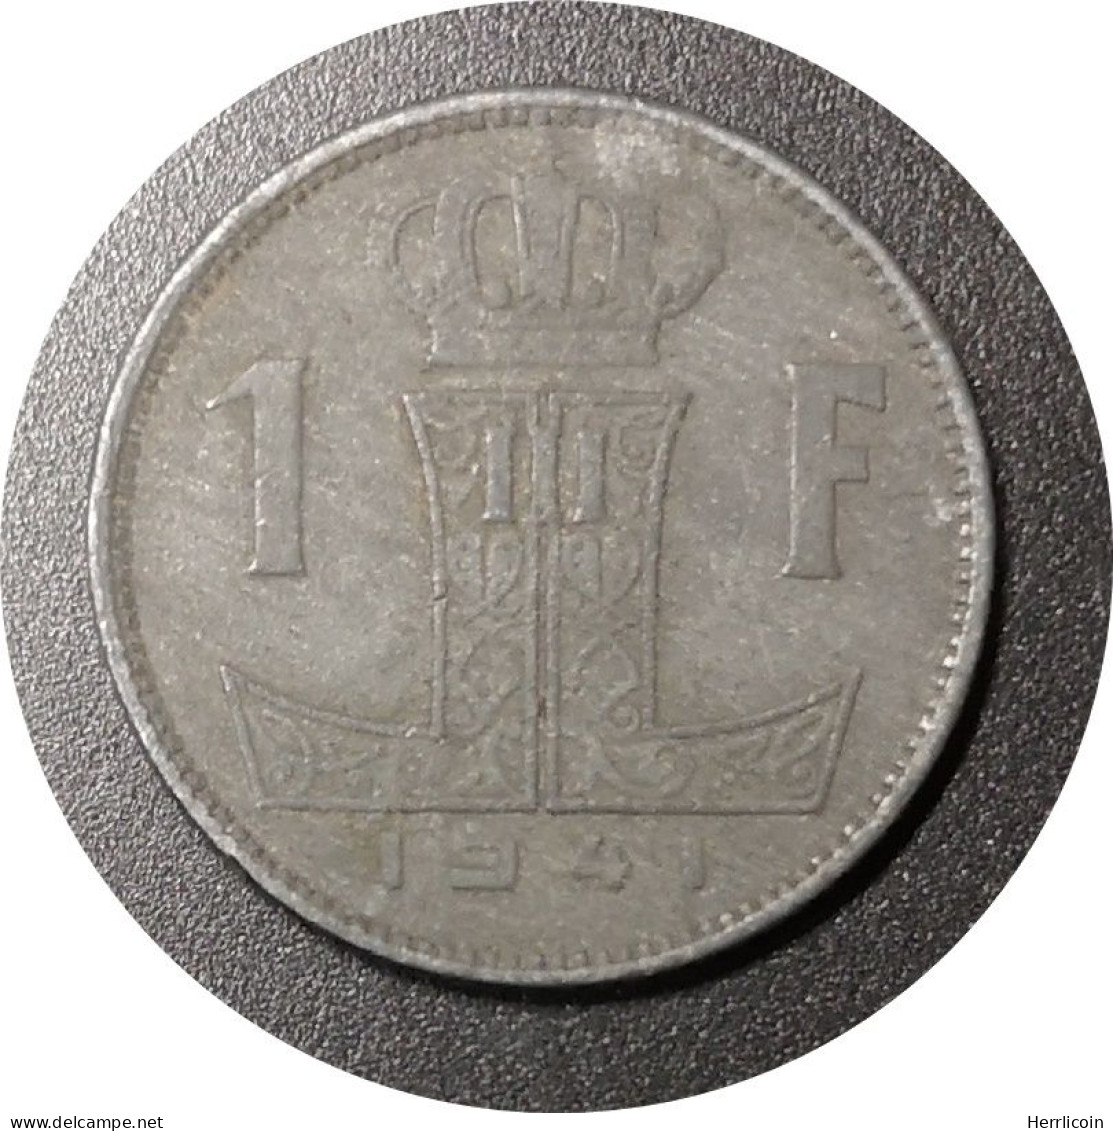 Monnaie Belgique - 1941 - 1 Franc - Léopold III - Type Rau Belgique-België - 1 Franc